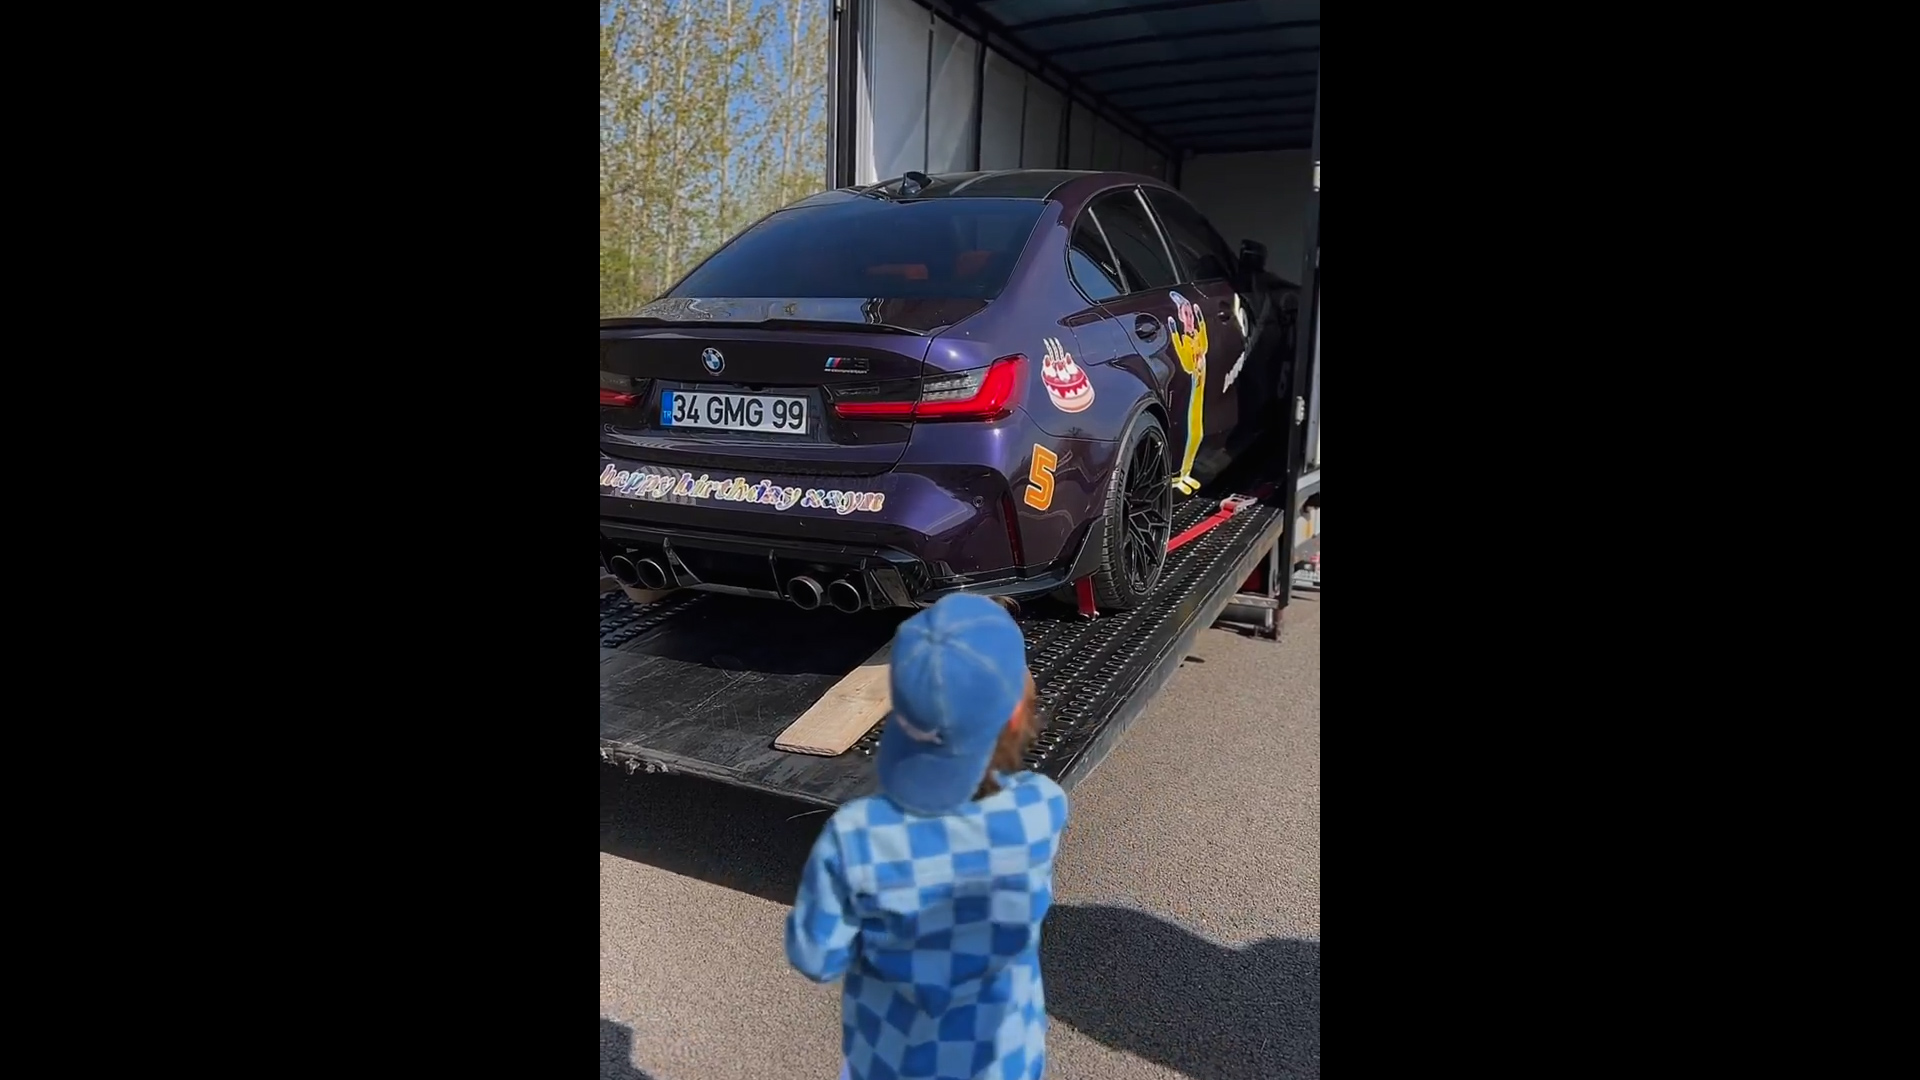 Kenan Sofuoğlu'nun oğlu Zayn Sofuoğlu, 5. yaşını pistte spor arabasıyla kutladı